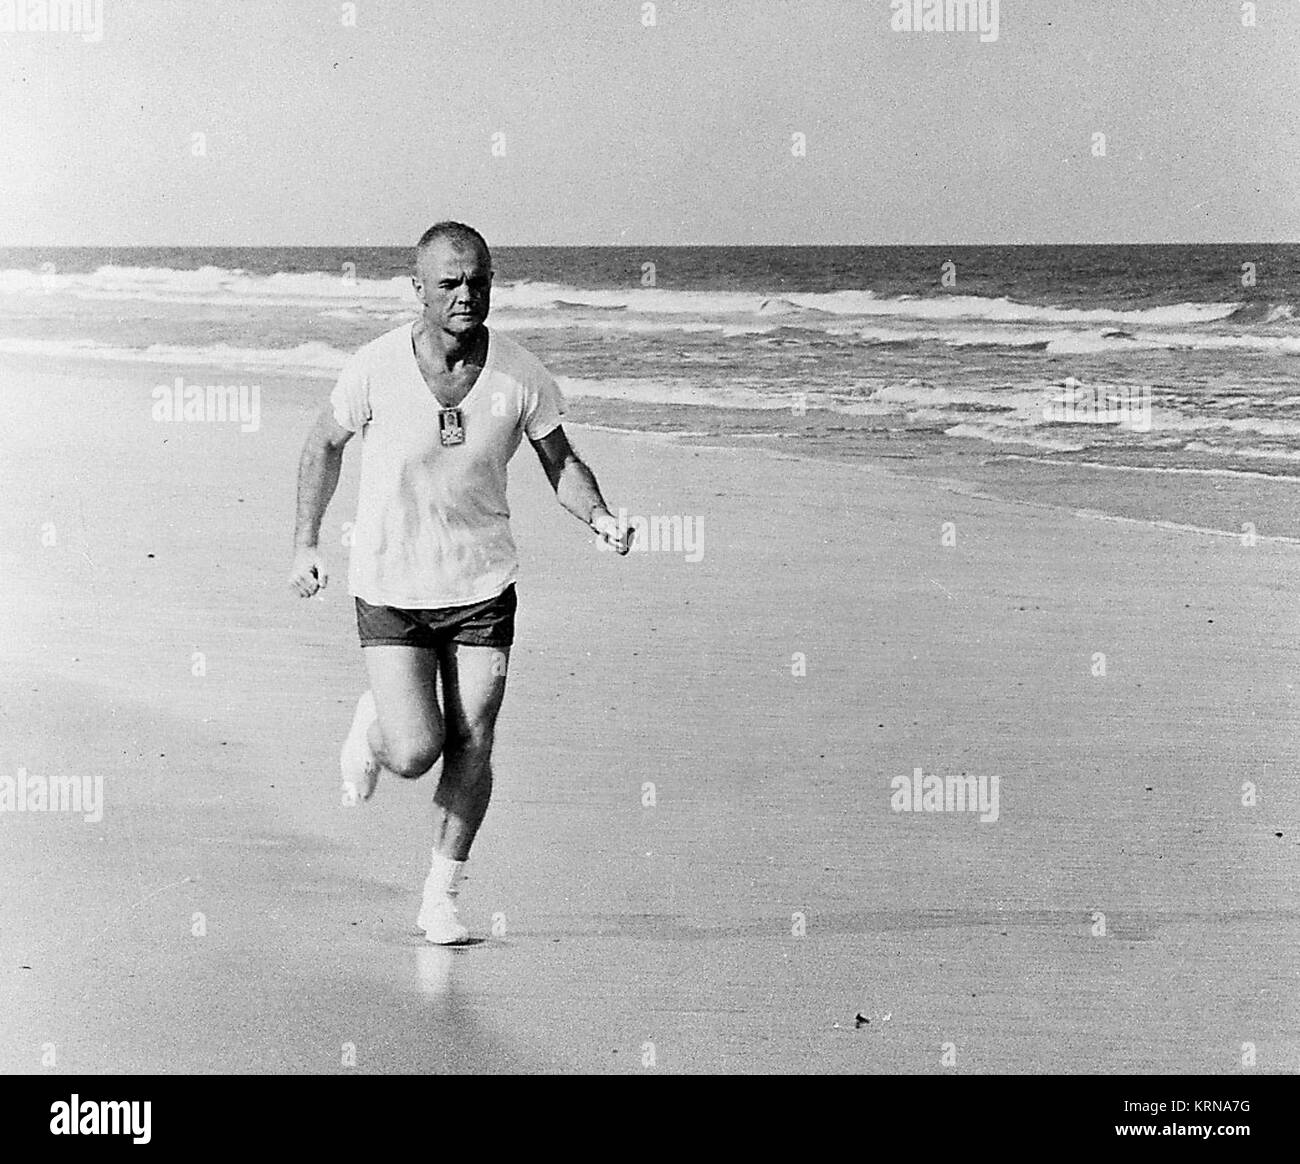 1962 -- le long de la plage à Cap Canaveral, en Floride, l'astronaute John H. Glenn Jr., pilote de la mission Mercury-Atlas 6, participe à un programme d'entraînement physique rigoureux, comme il l'illustre par de fréquentes d'exécution. Crédit photo : NASA KSC-JohnGlenn-0005 (31144829360) Banque D'Images